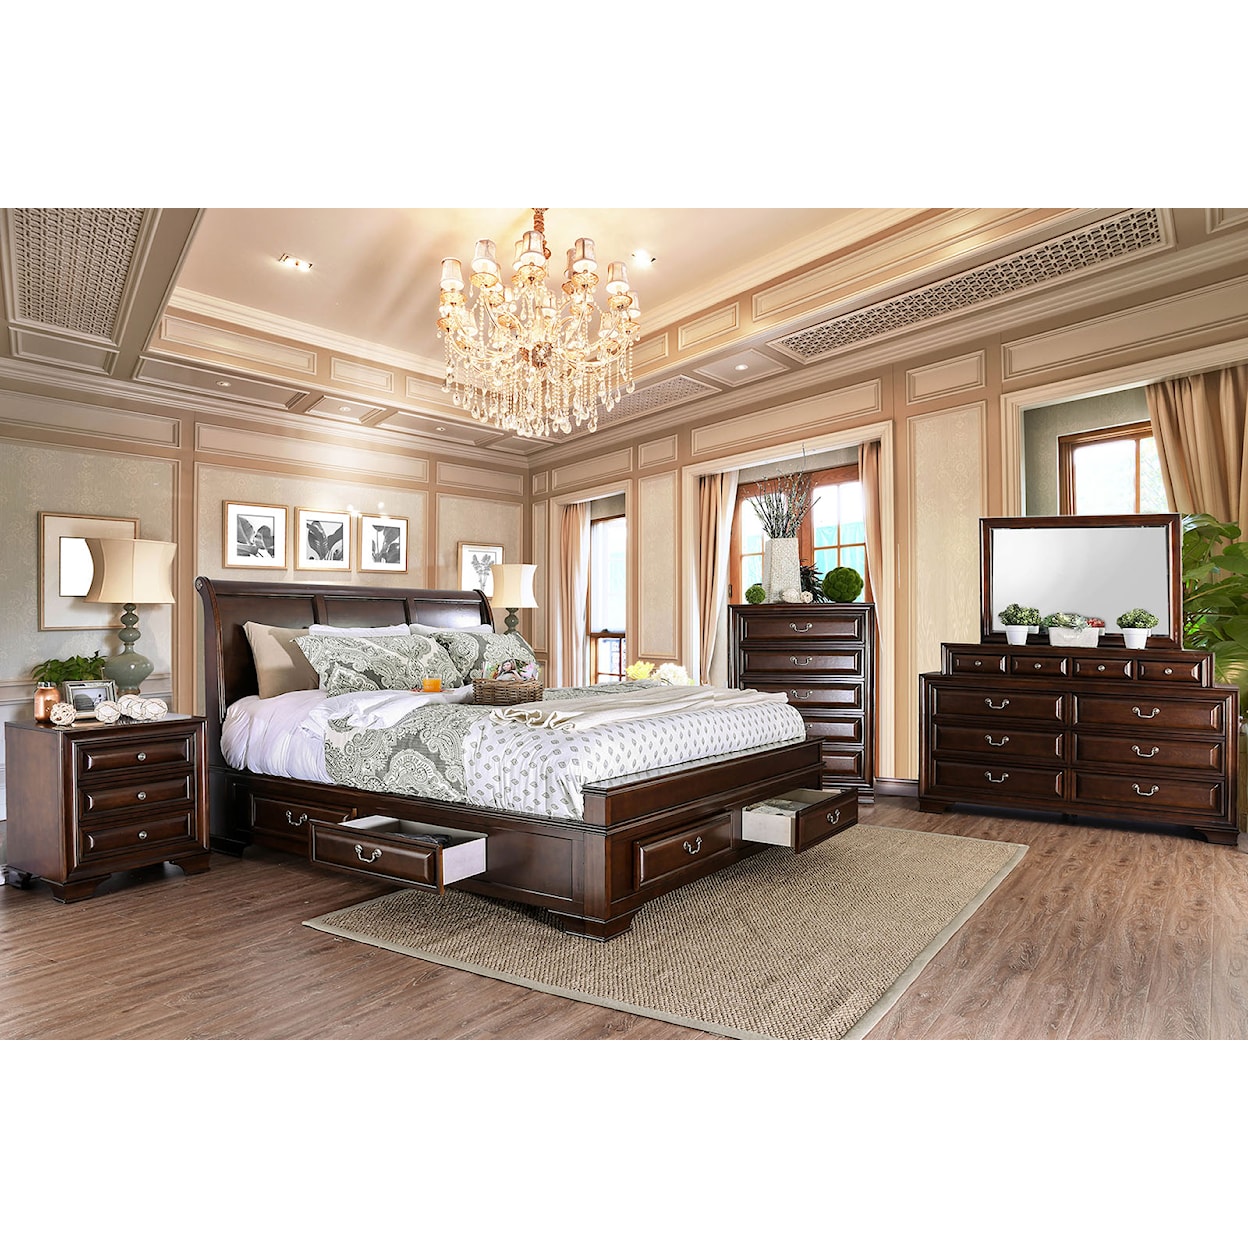 Furniture of America Brandt 4-Piece Queen Bedroom Set